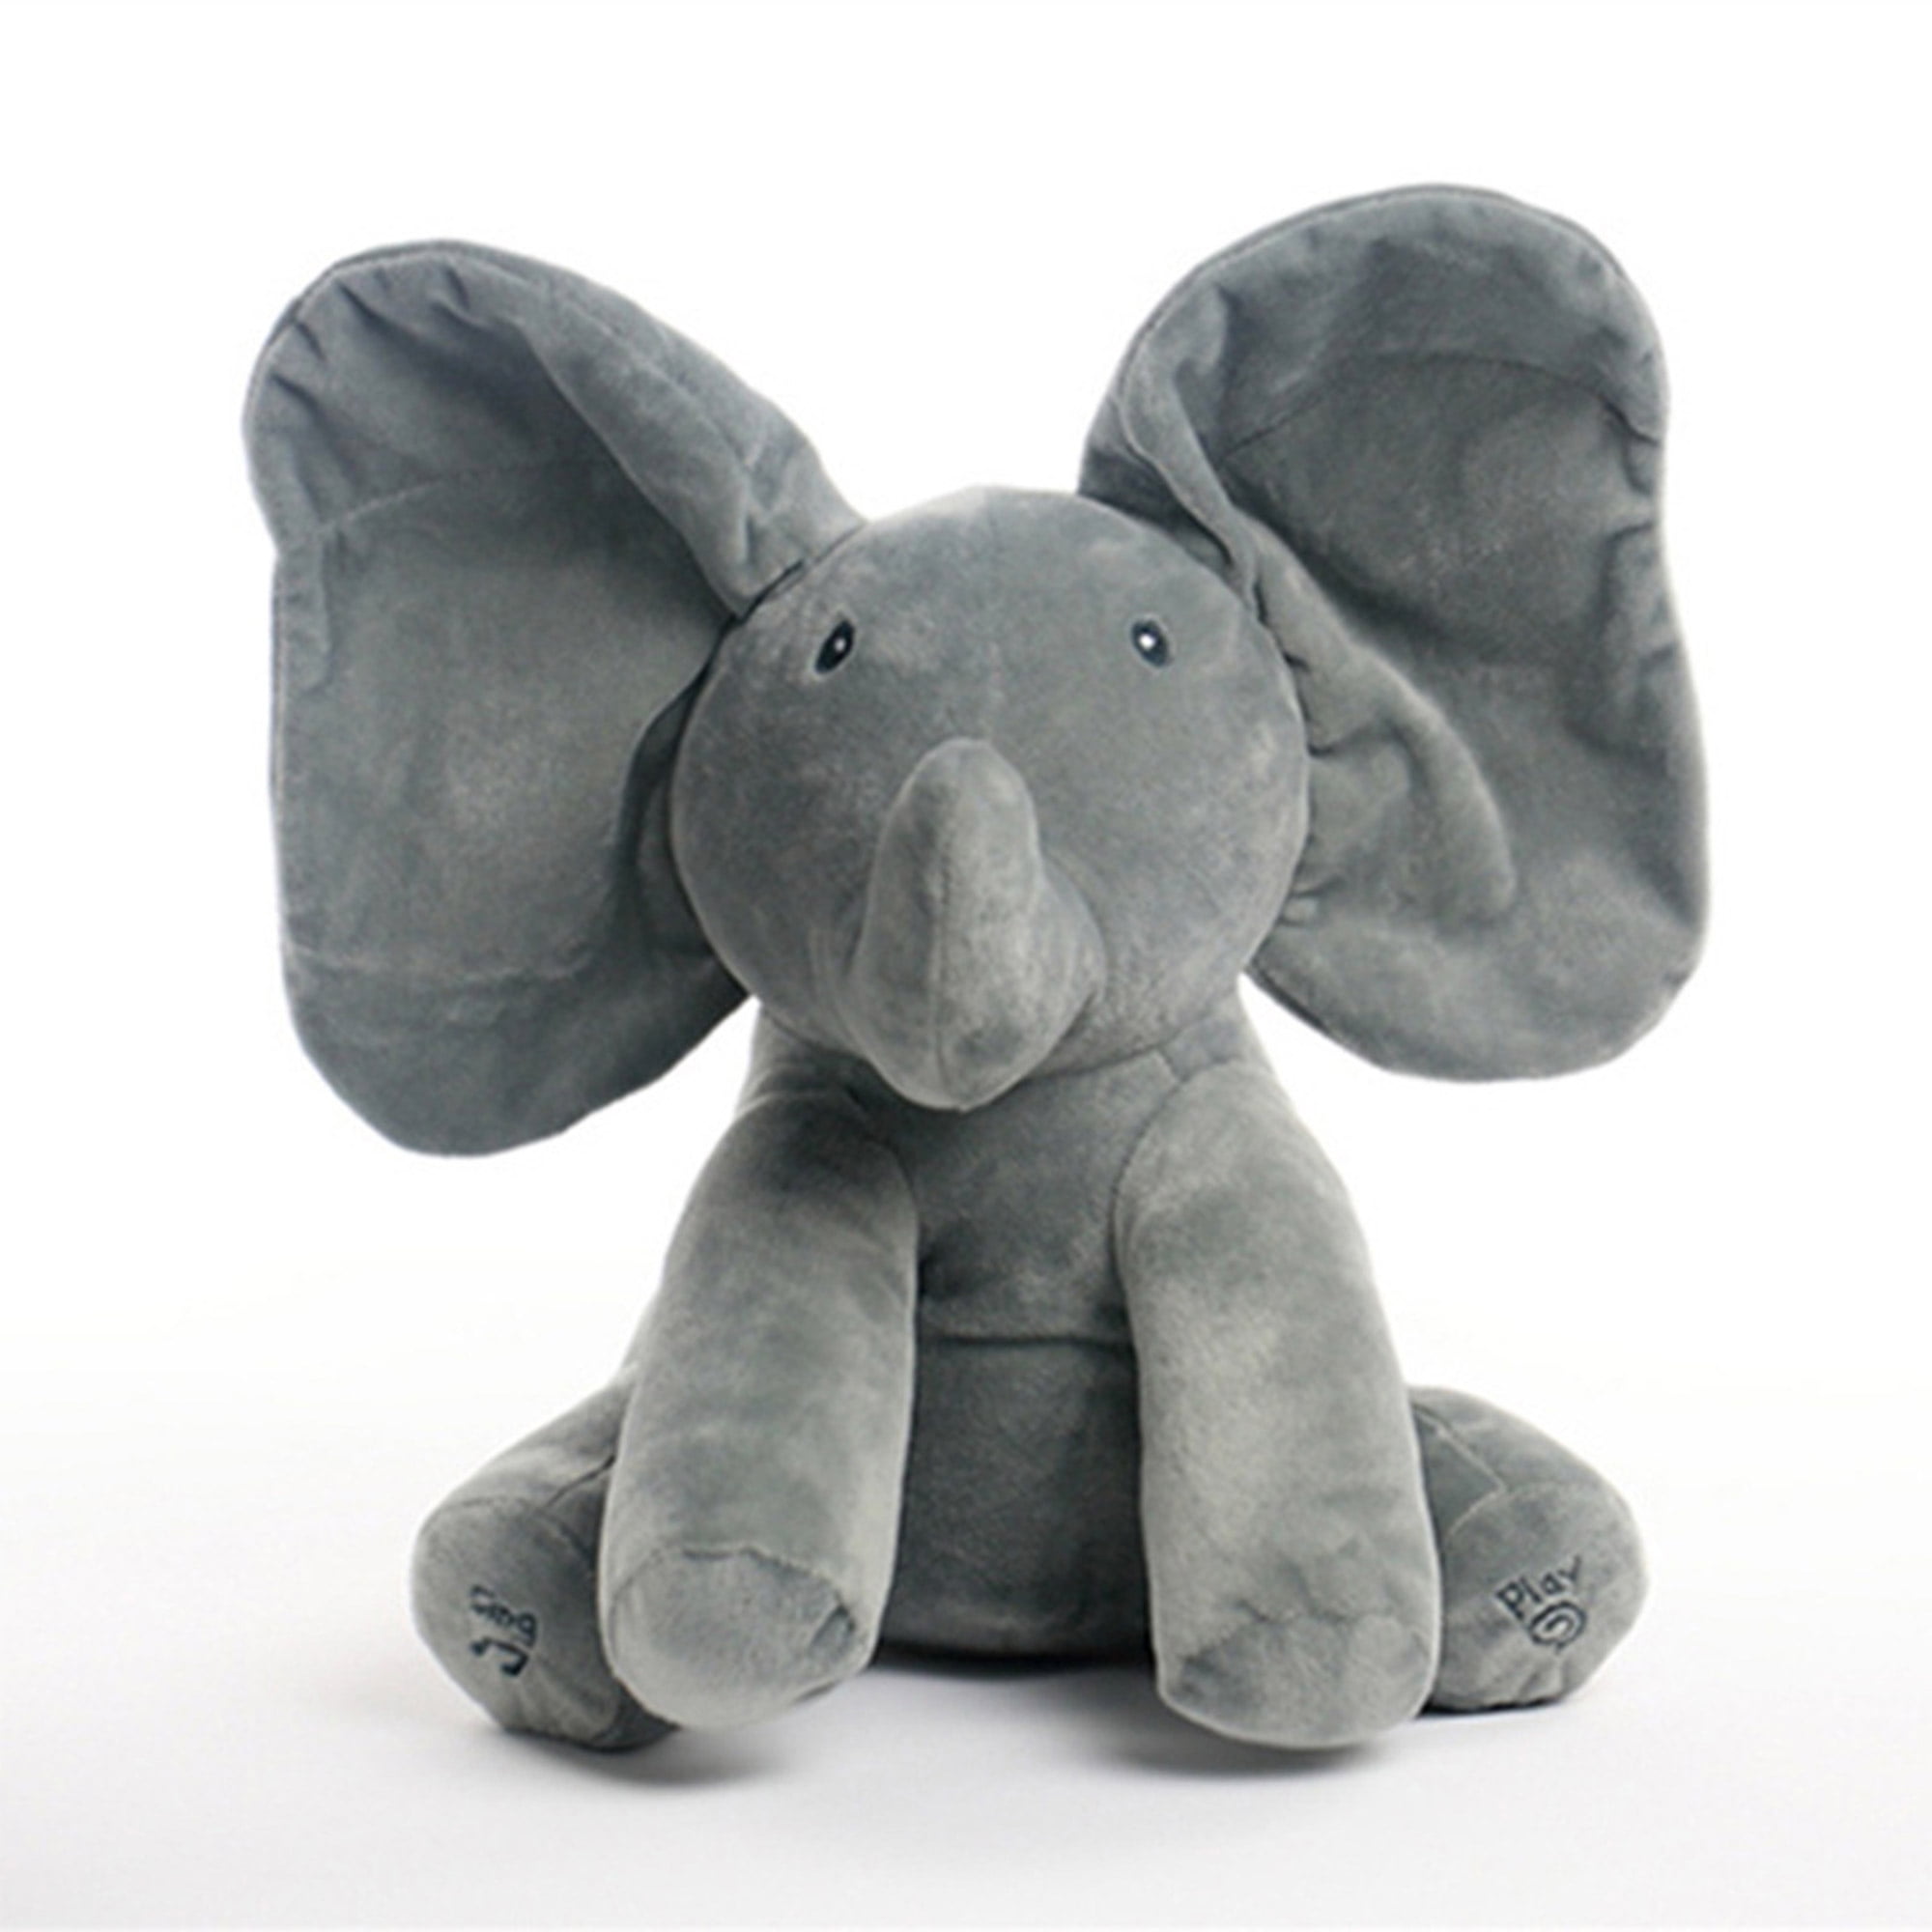 Игрушка слон купить. Мягкая игрушка слон. Игрушка "Слоник". Мягкая игрушка сомёнок. Плюшевые игрушки Слонята.